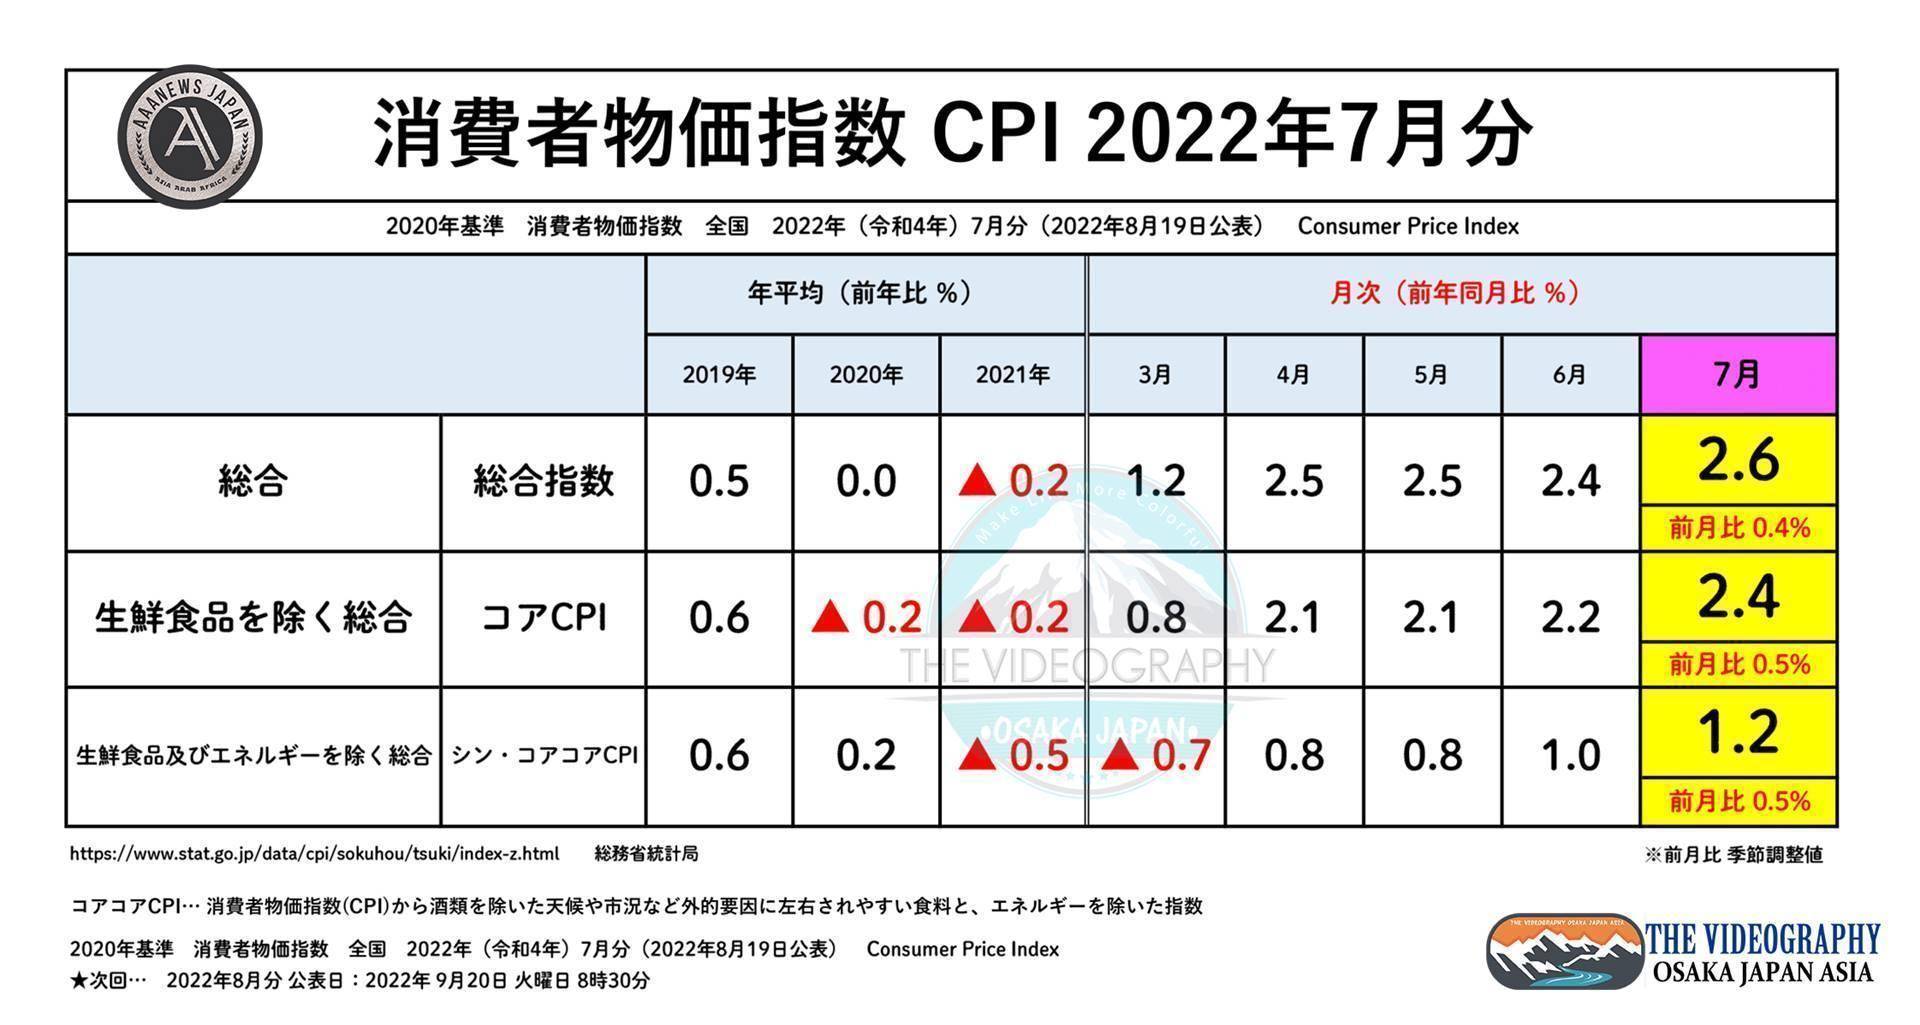 消費者物価指数（CPI） 総合指数 2.6％ 新コアコアCPI 1.2% ※2022年7月分